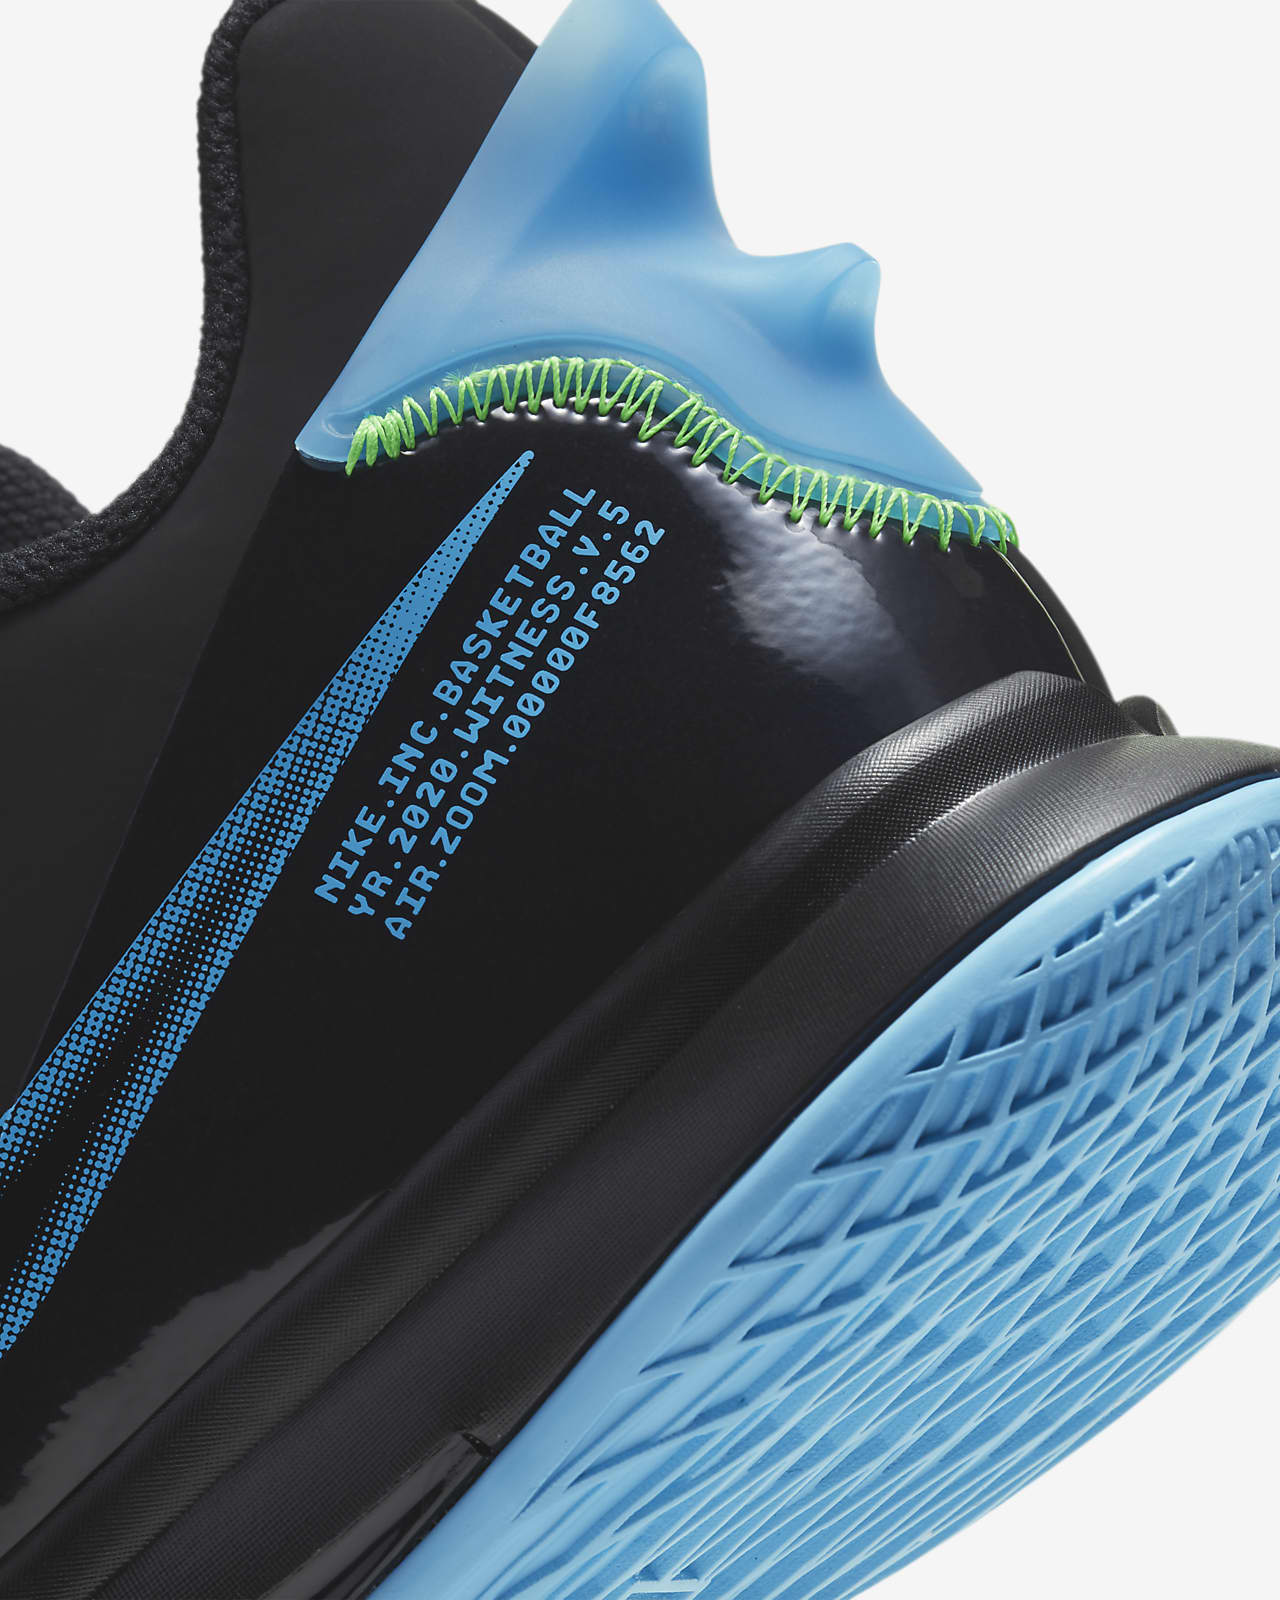 LeBron Witness 5 Basketball Shoes. Nike.com